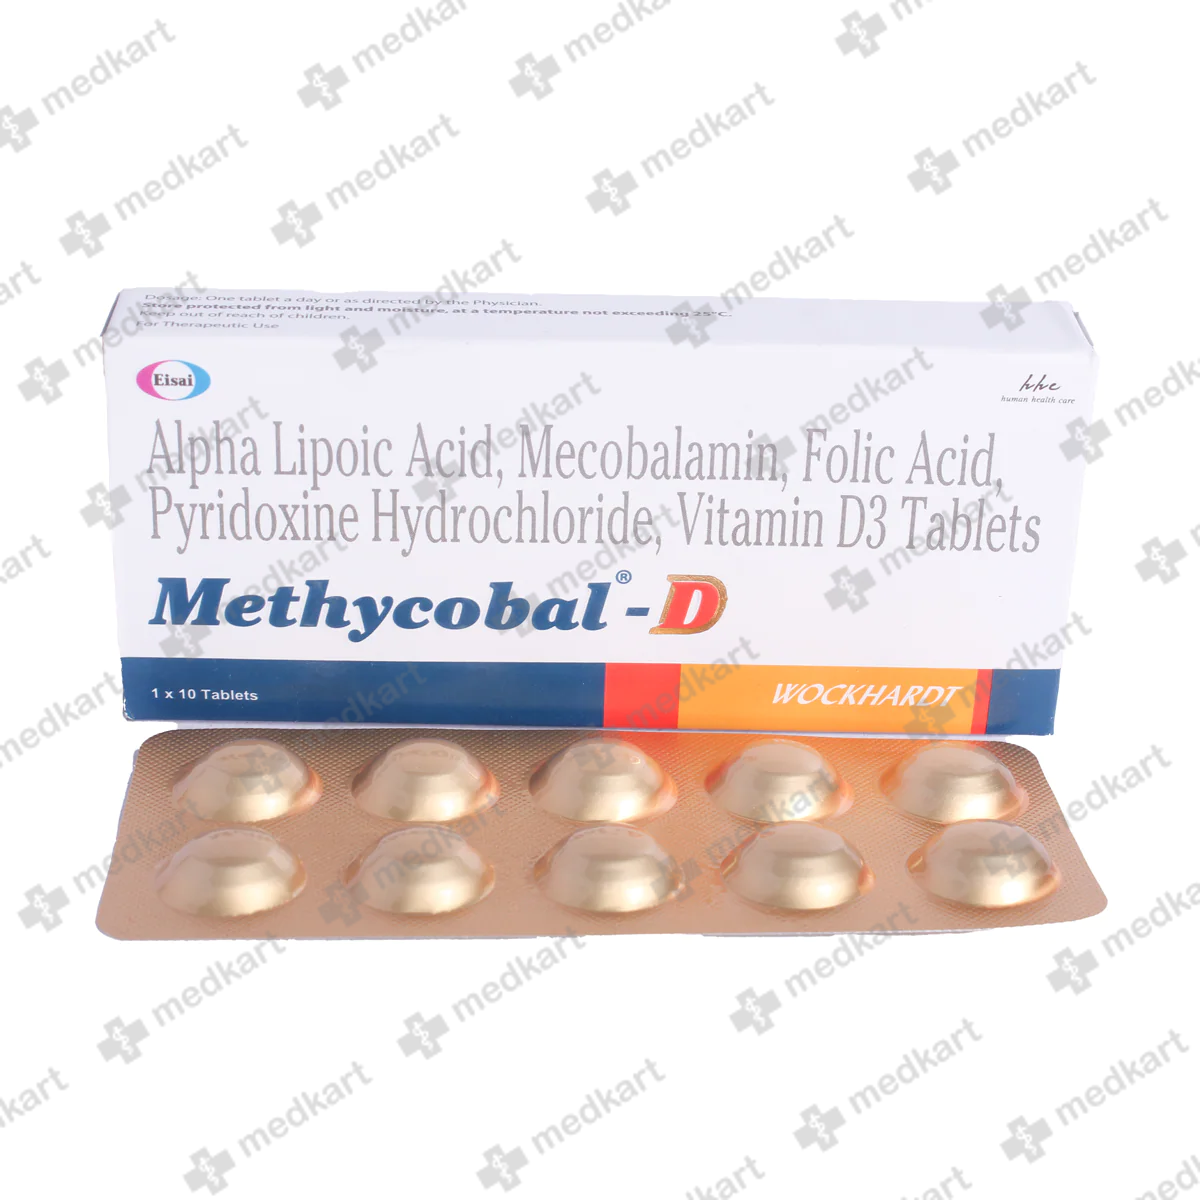 methycobal-d-tablet-10s